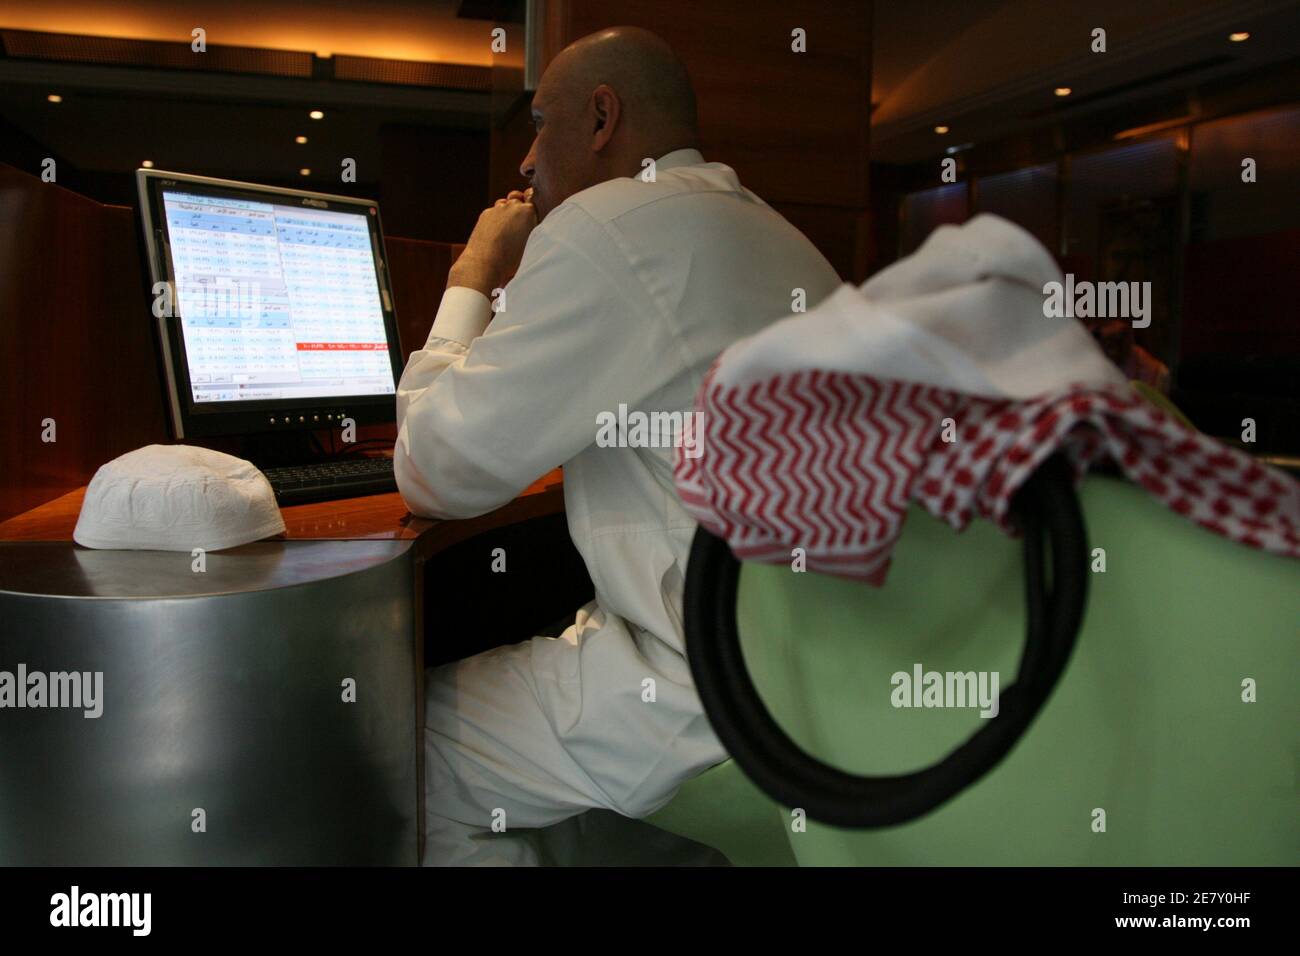 Un négociant saoudien travaille à la Banque saoudienne d'investissement à Riyad le 18 mars 2008. Les autorités saoudiennes espéraient qu’encourager une participation de masse à la détention d’actions contribuerait à répartir les richesses du boom pétrolier actuel avec la flambée des prix mondiaux. Mais un krach boursier en 2006 et une hausse de l'inflation au cours des derniers mois ont répandu une atmosphère de morosité parmi les Saoudiens ordinaires. REUTERS/Fahad Shadeed (ARABIE SAOUDITE) Banque D'Images